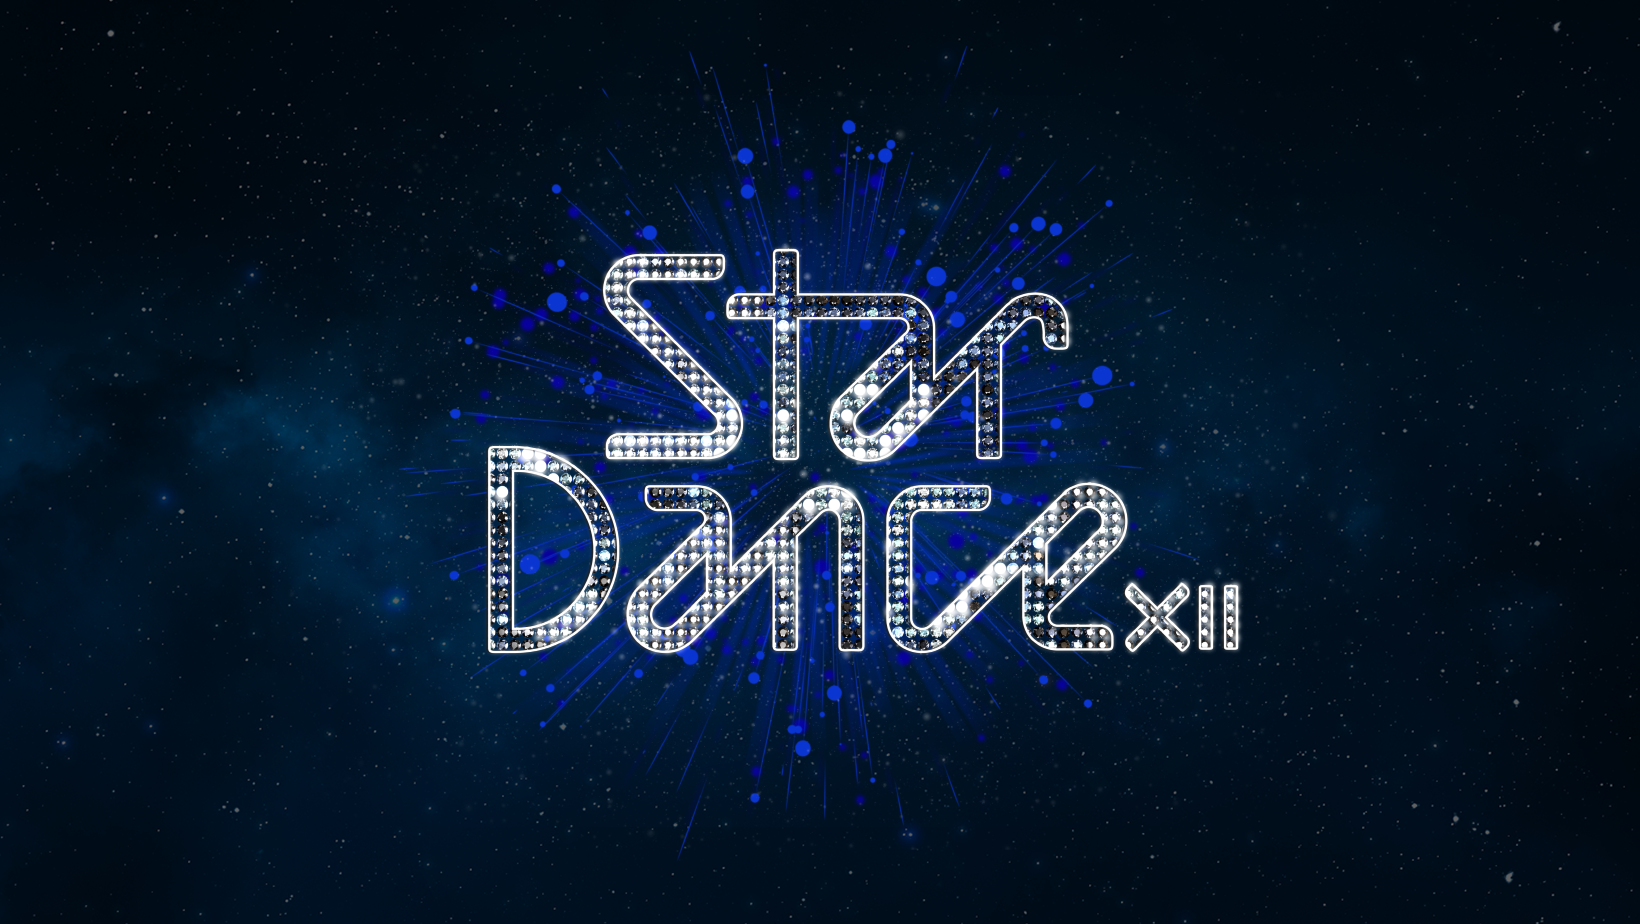 SD 12 logo